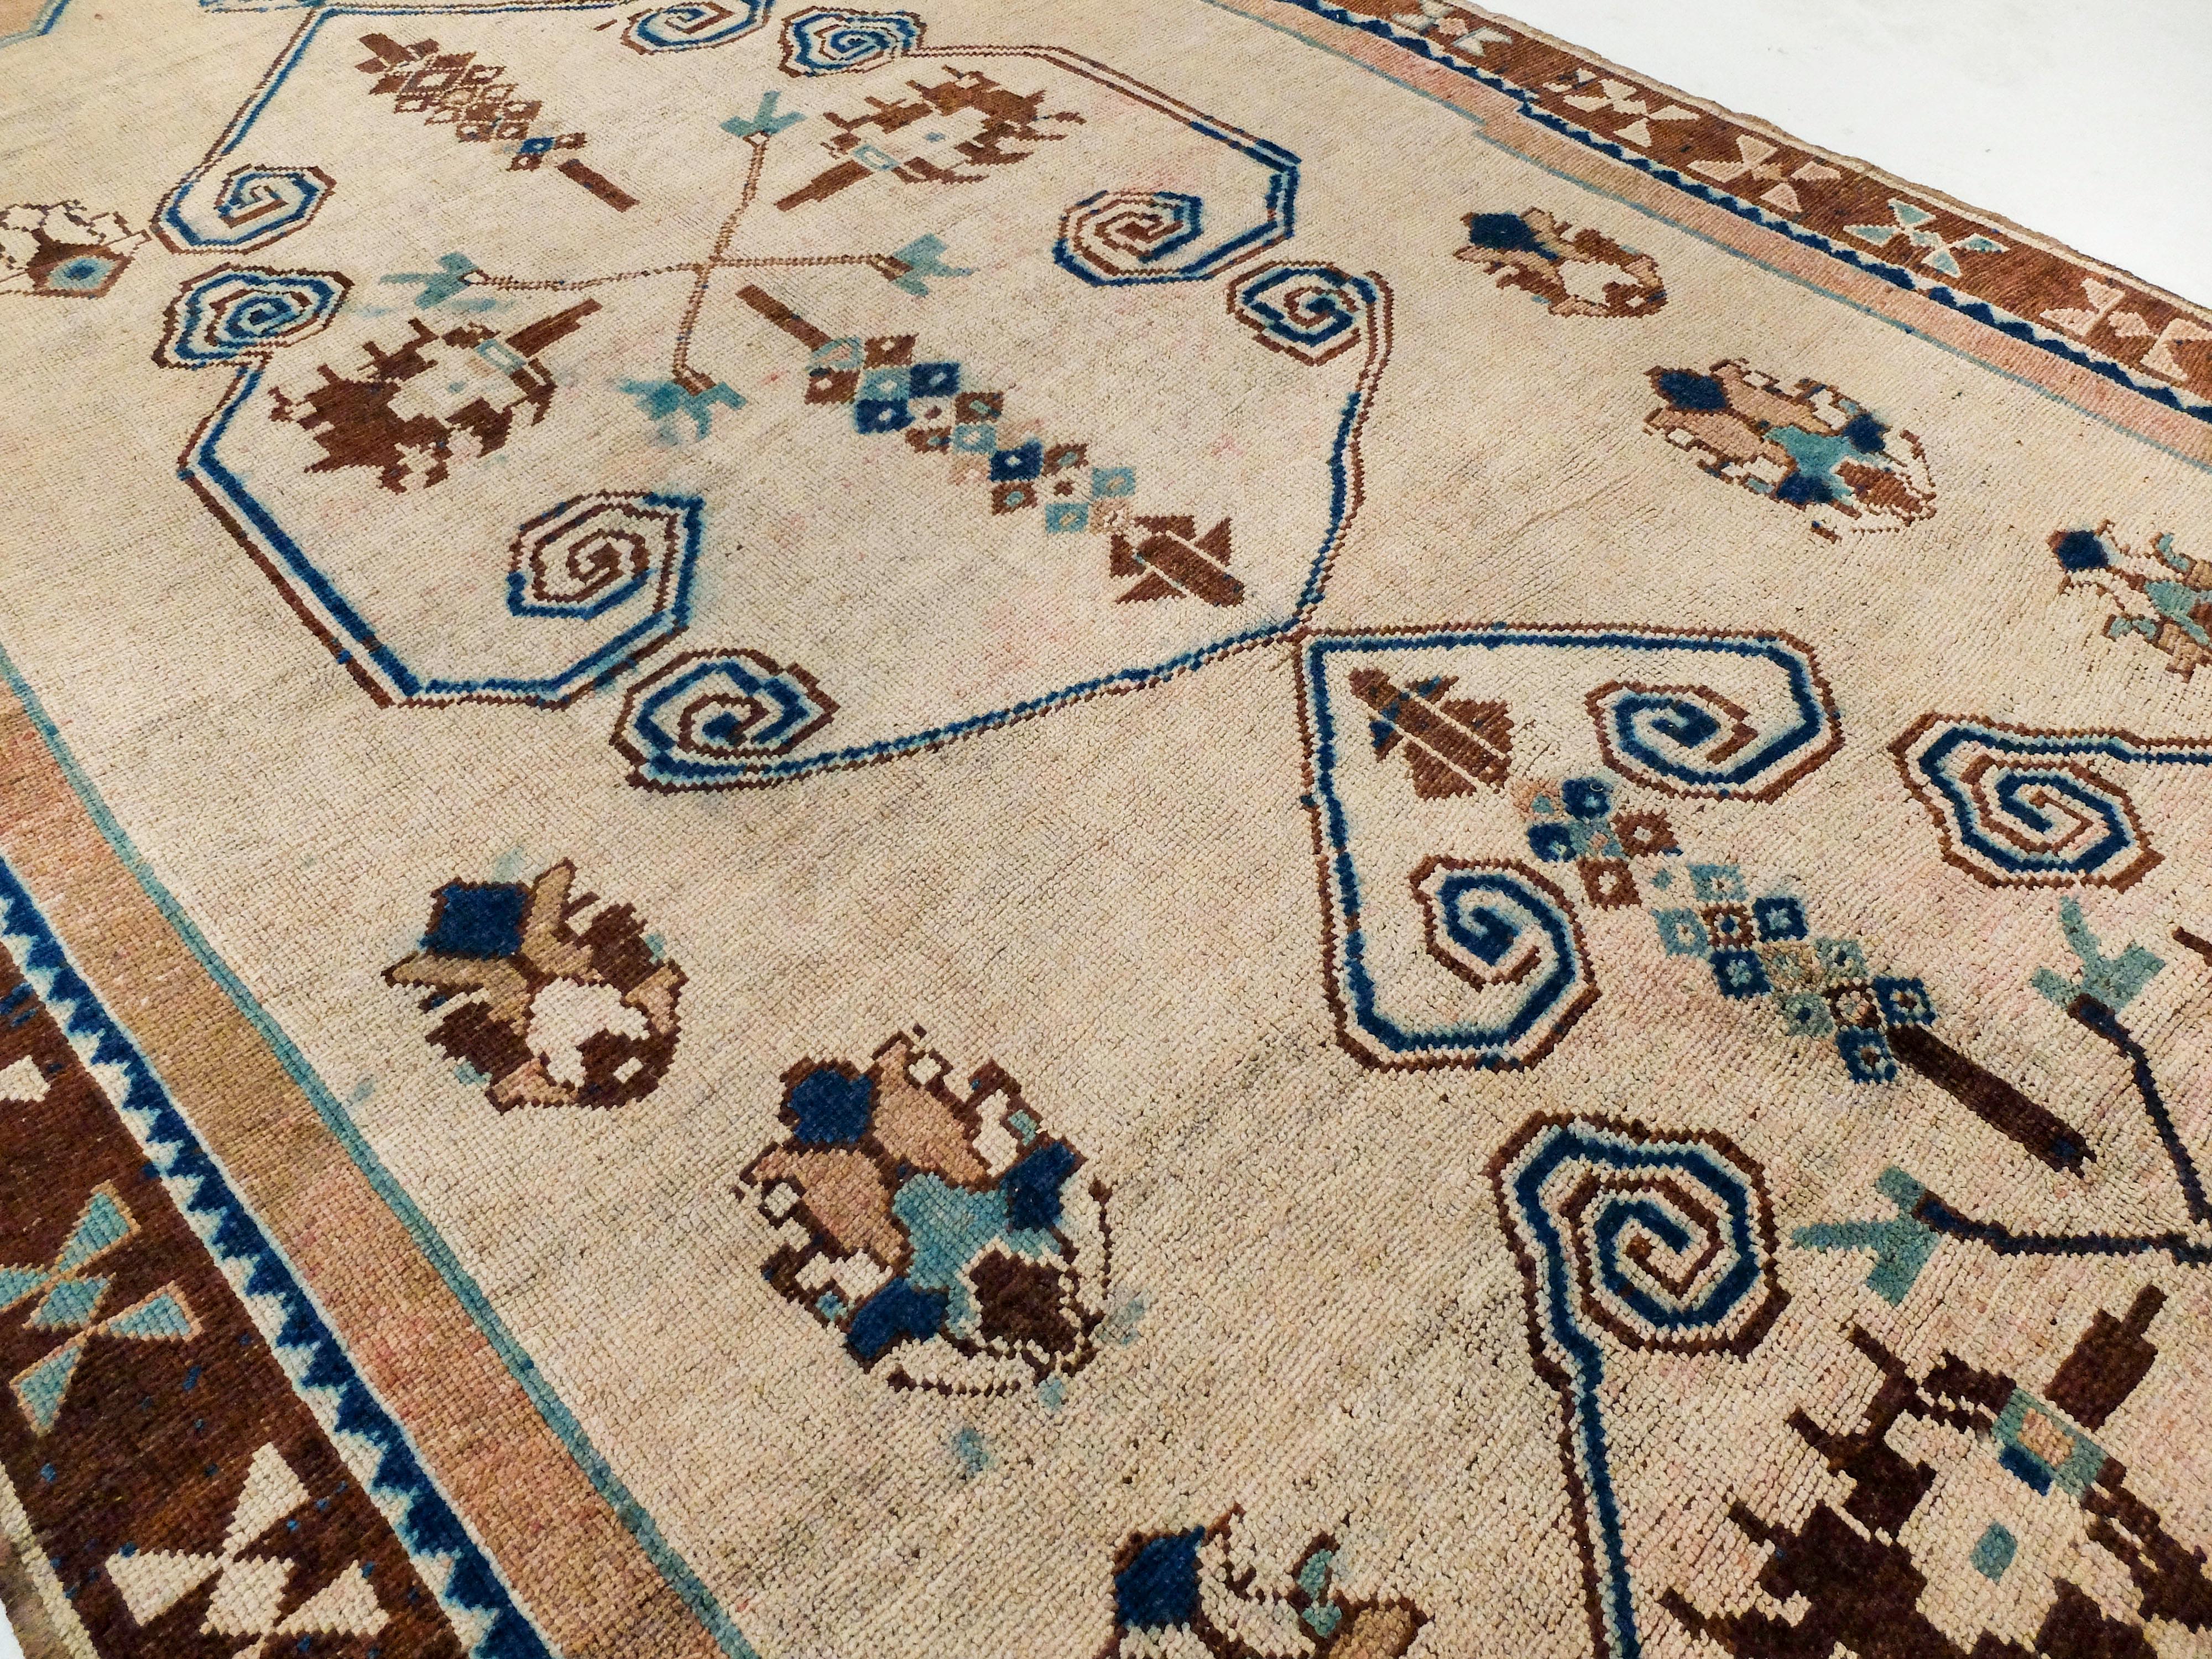 Ce tapis ancien turc présente un motif distinctif et presque ludique. Les deux formes principales sont dessinées à la main et ne sont pas parfaitement symétriques, ce qui ajoute au caractère unique de ce tapis. Ses éléments ludiques comprennent des